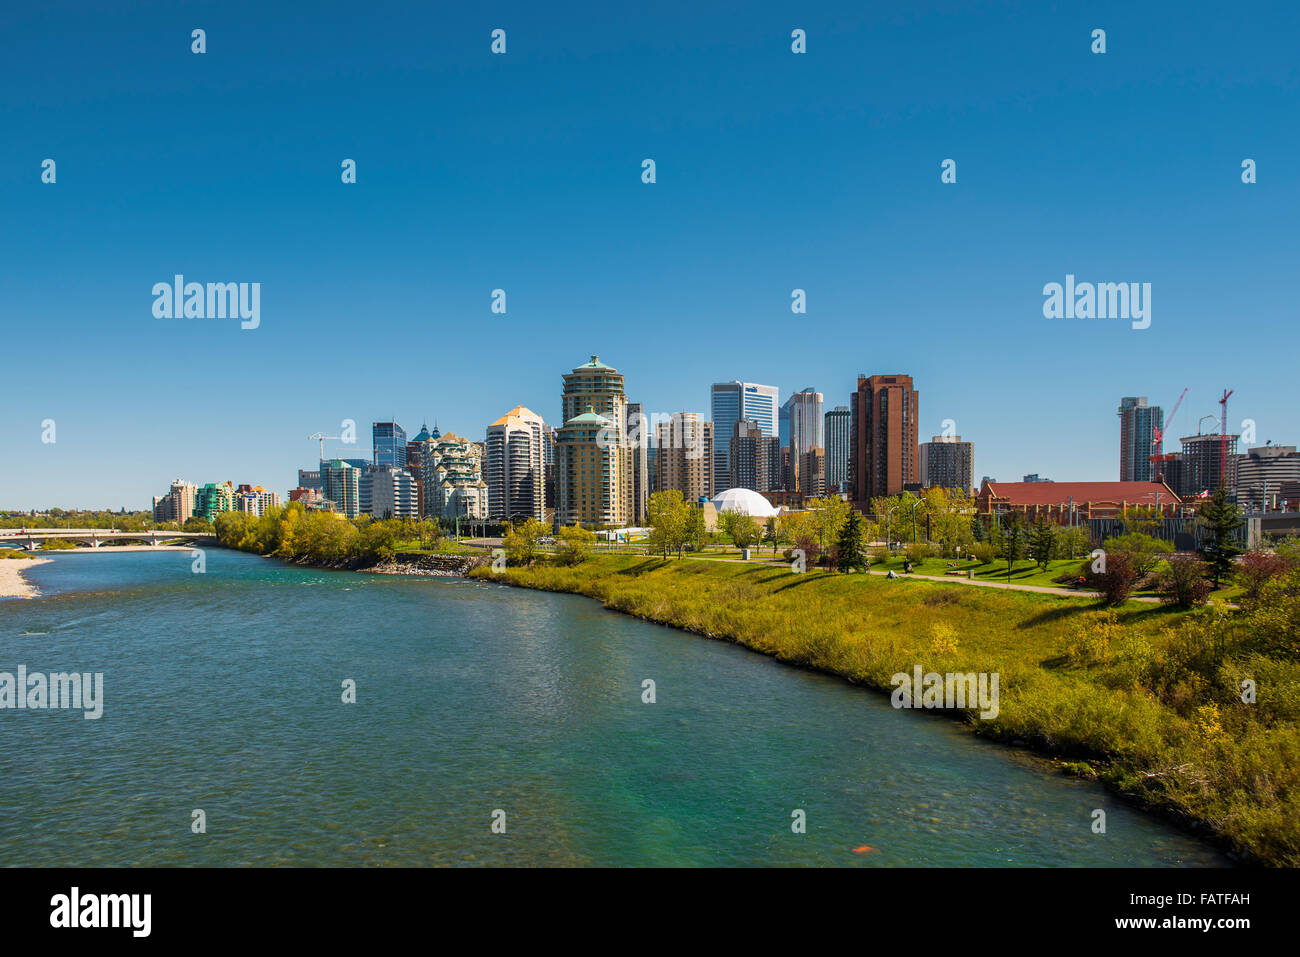 Bow river and city skyline Calgary Alberta Canada Stock Photo